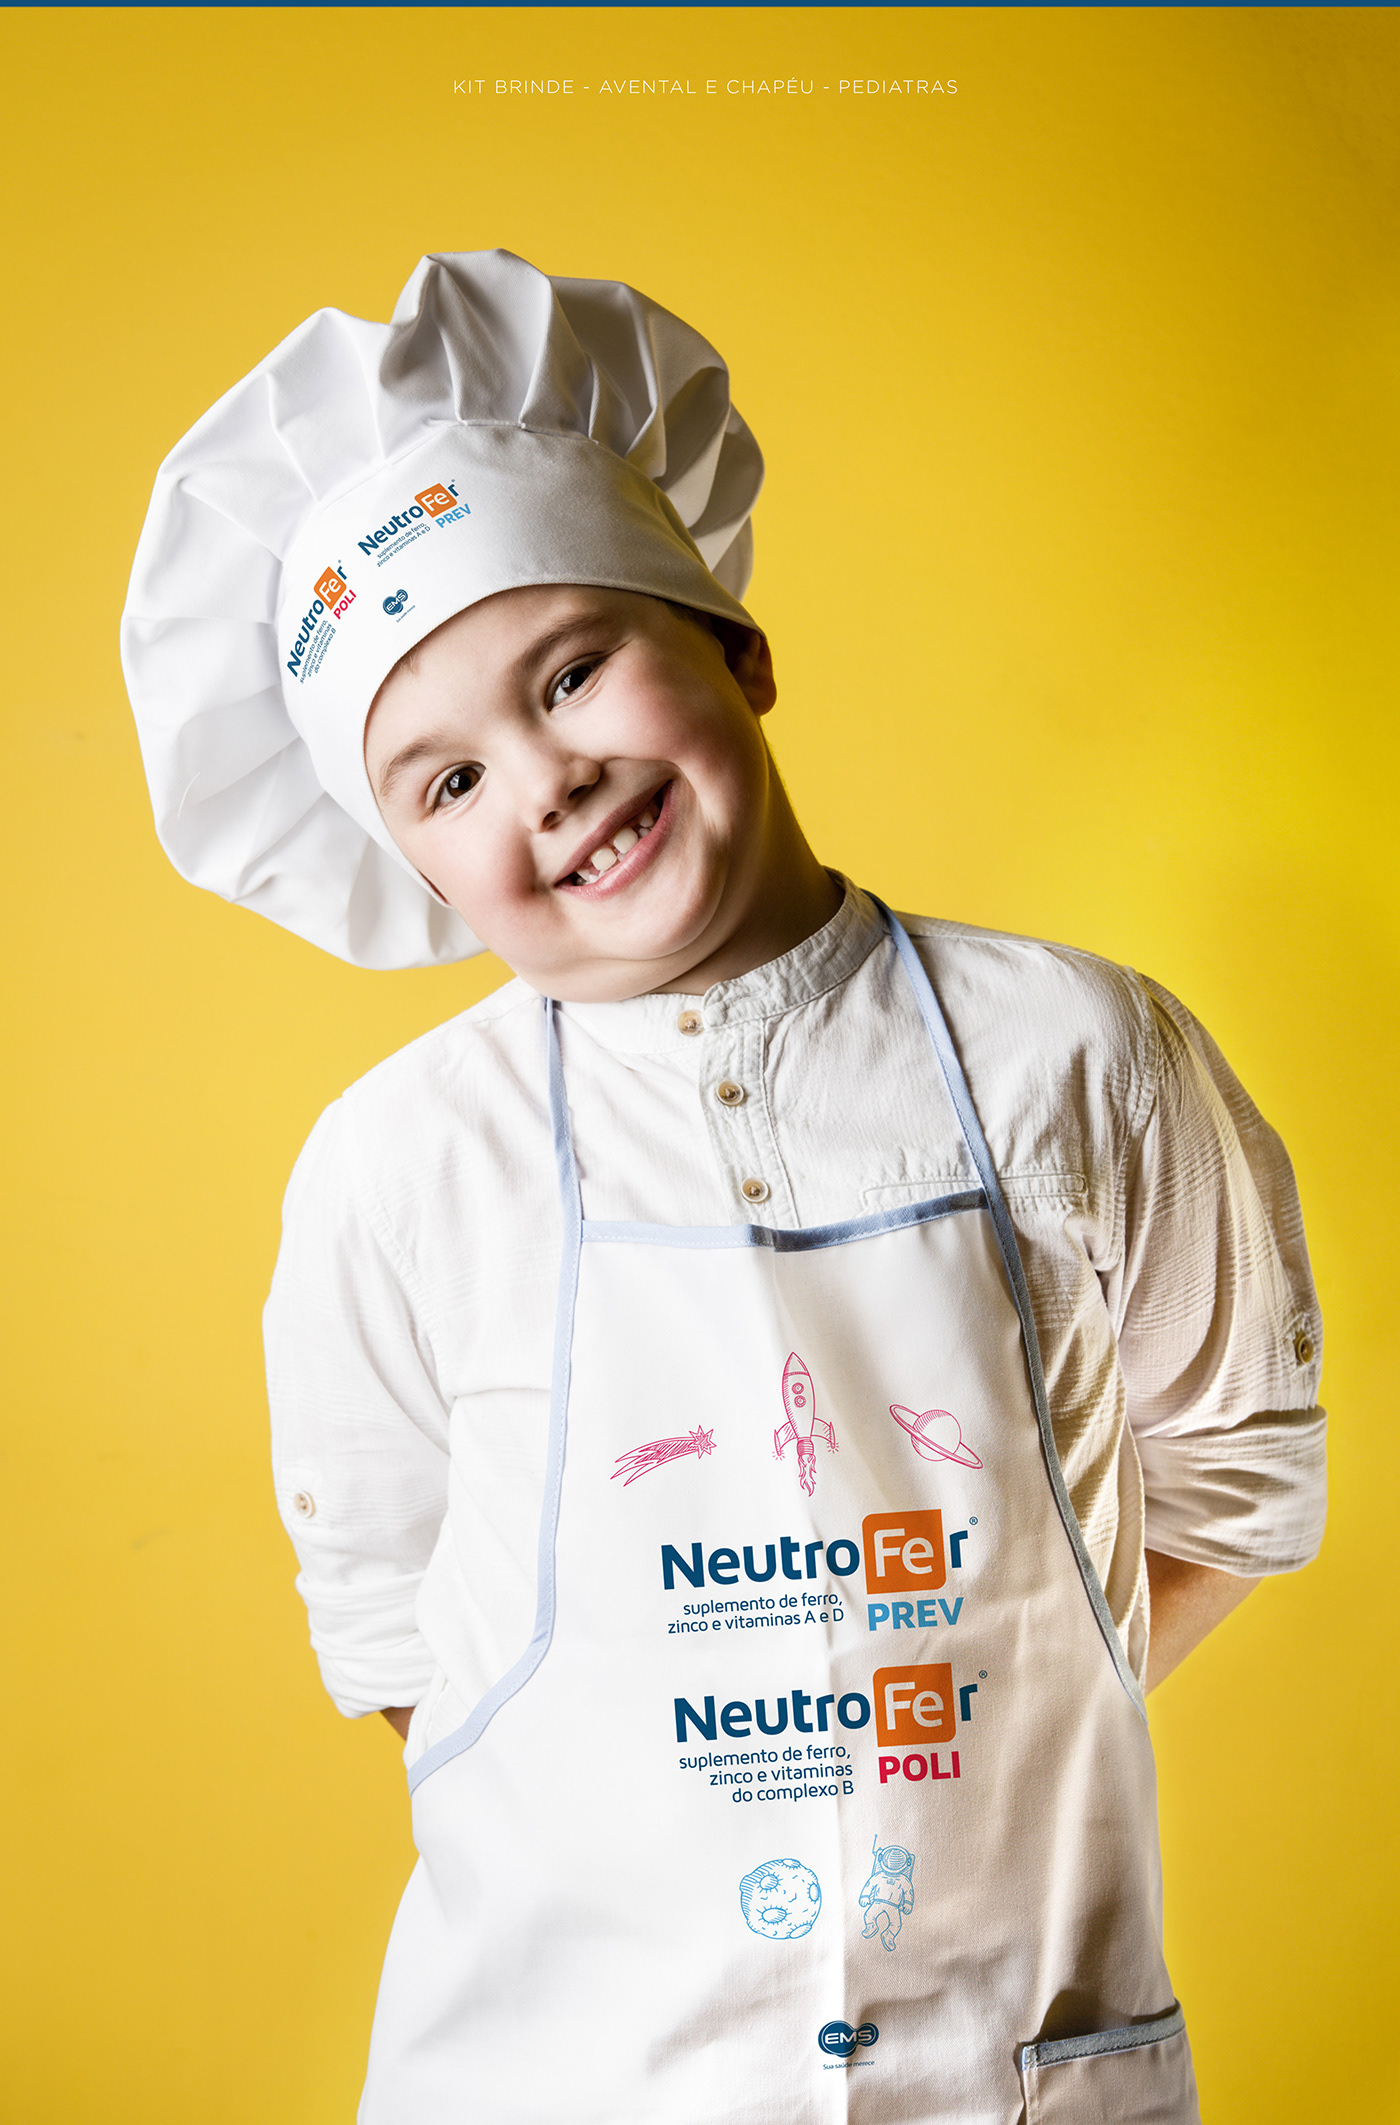 neutrofer ems Pharma medicine doctor child criança iron medicamento medico